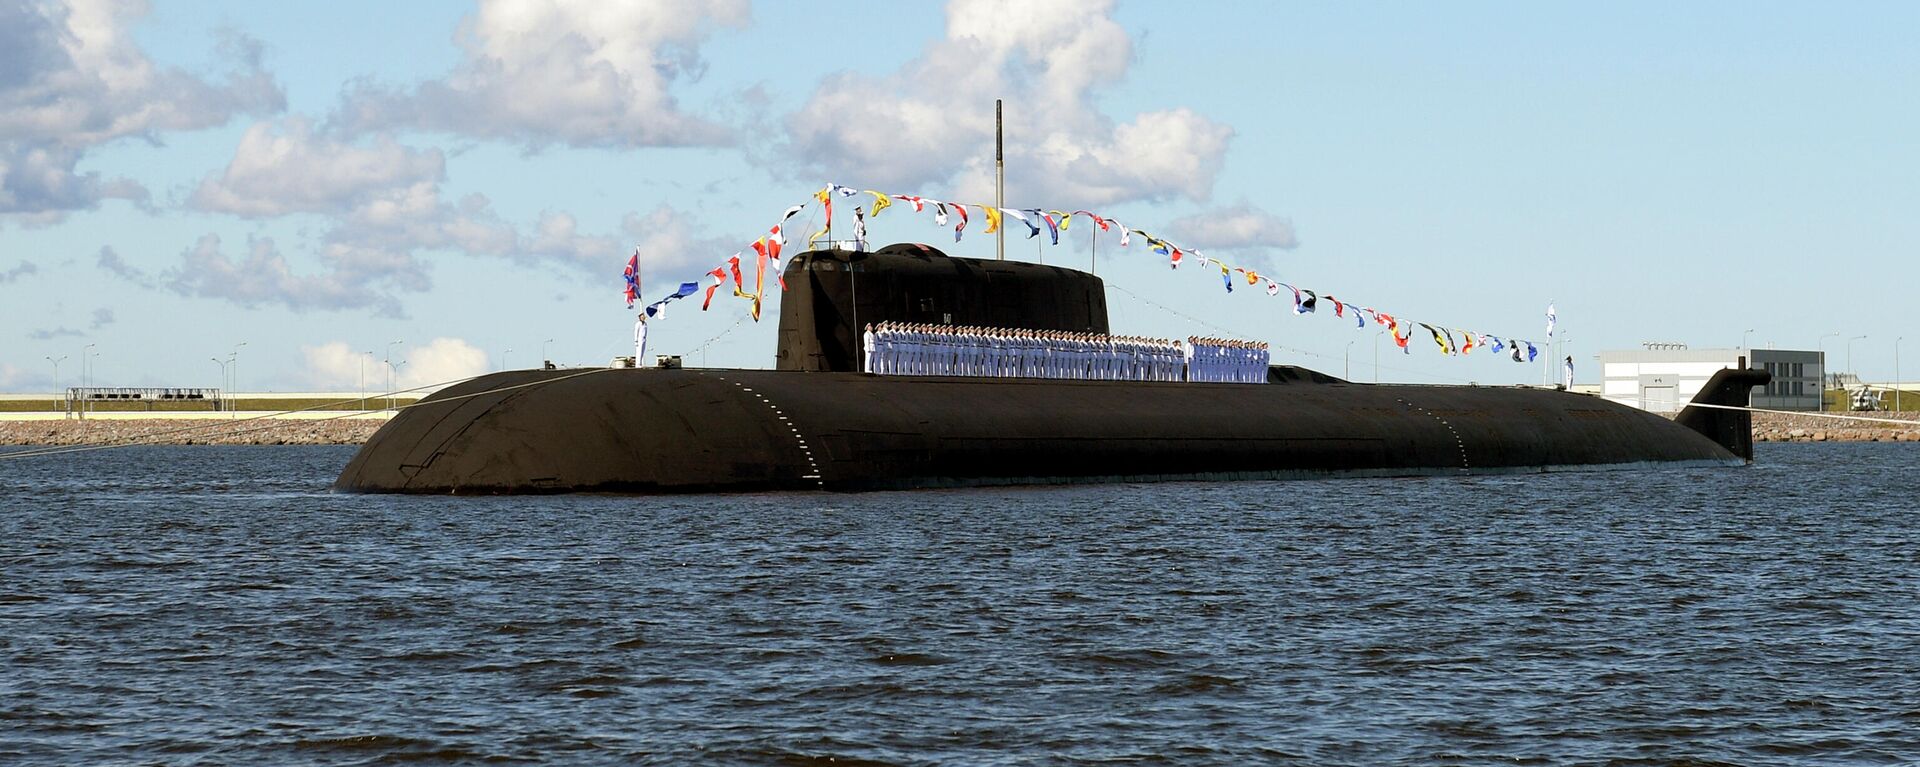 Российская атомная подводная лодка с крылатыми ракетами К-266 Орел - Sputnik Таджикистан, 1920, 07.04.2021